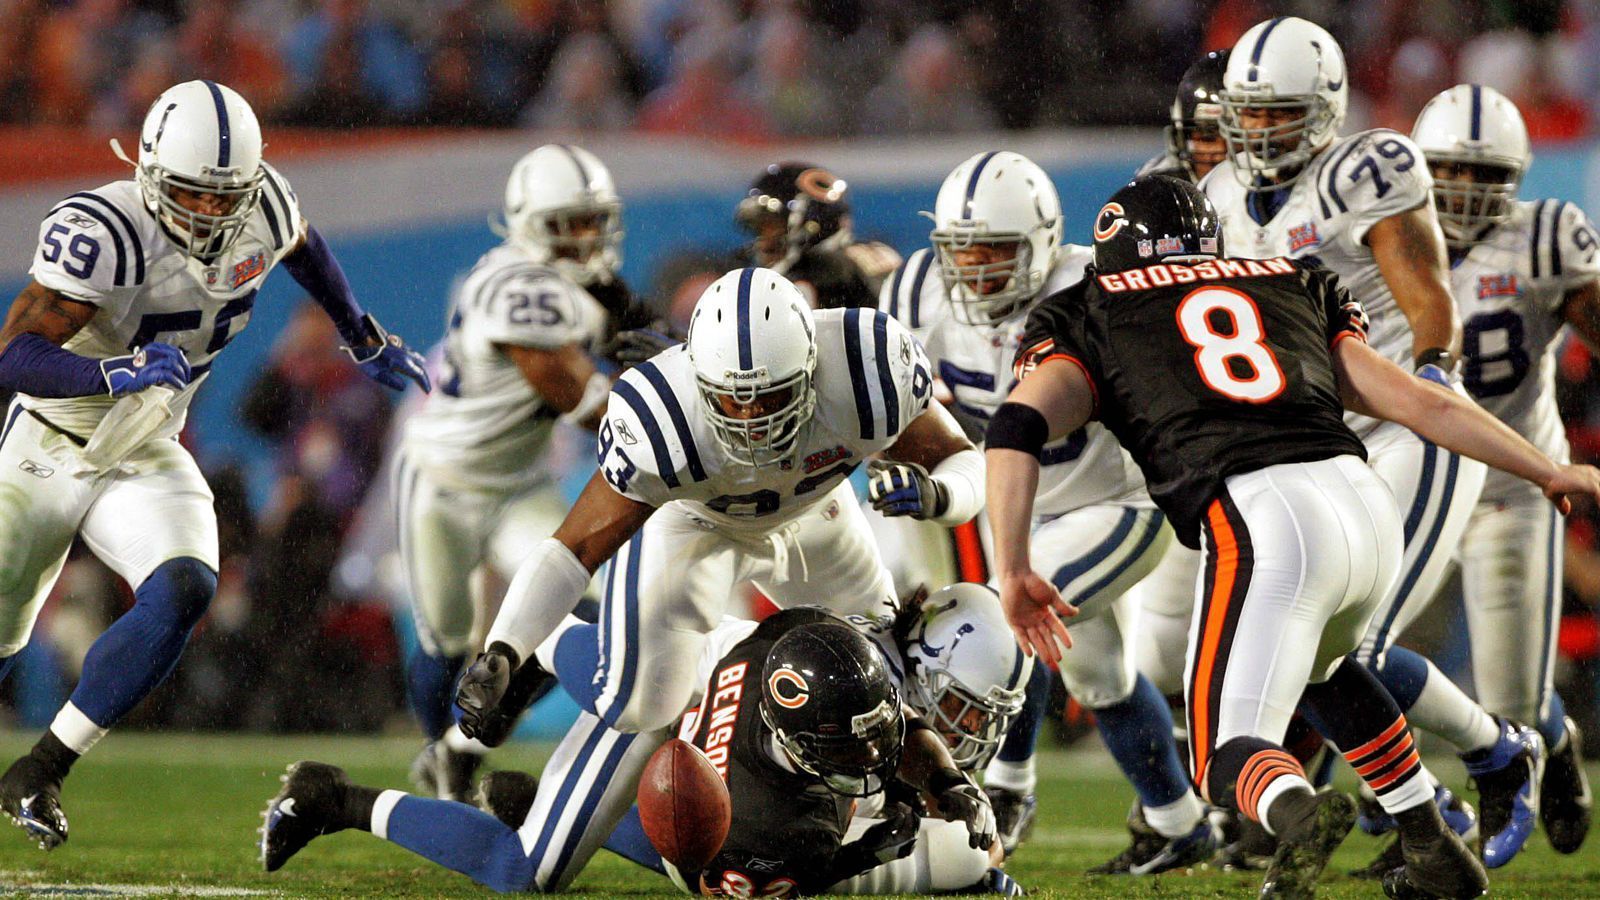 
                <strong>Bears letztmals im Super Bowl</strong><br>
                Den Super Bowl im Februar 2007 gewannen die Indianapolis Colts mit einem 29:17 gegen die Chicago Bears. Während die Colts 2009 noch einmal das große Spiel erreichten (und verloren), warten die Bears noch auf eine weitere Teilnahme. In jenem Spiel erzielte Devin Hester mit einem Return-Touchdown erstmals in der Super-Bowl-Geschichte Punkte beim Kickoff.
              